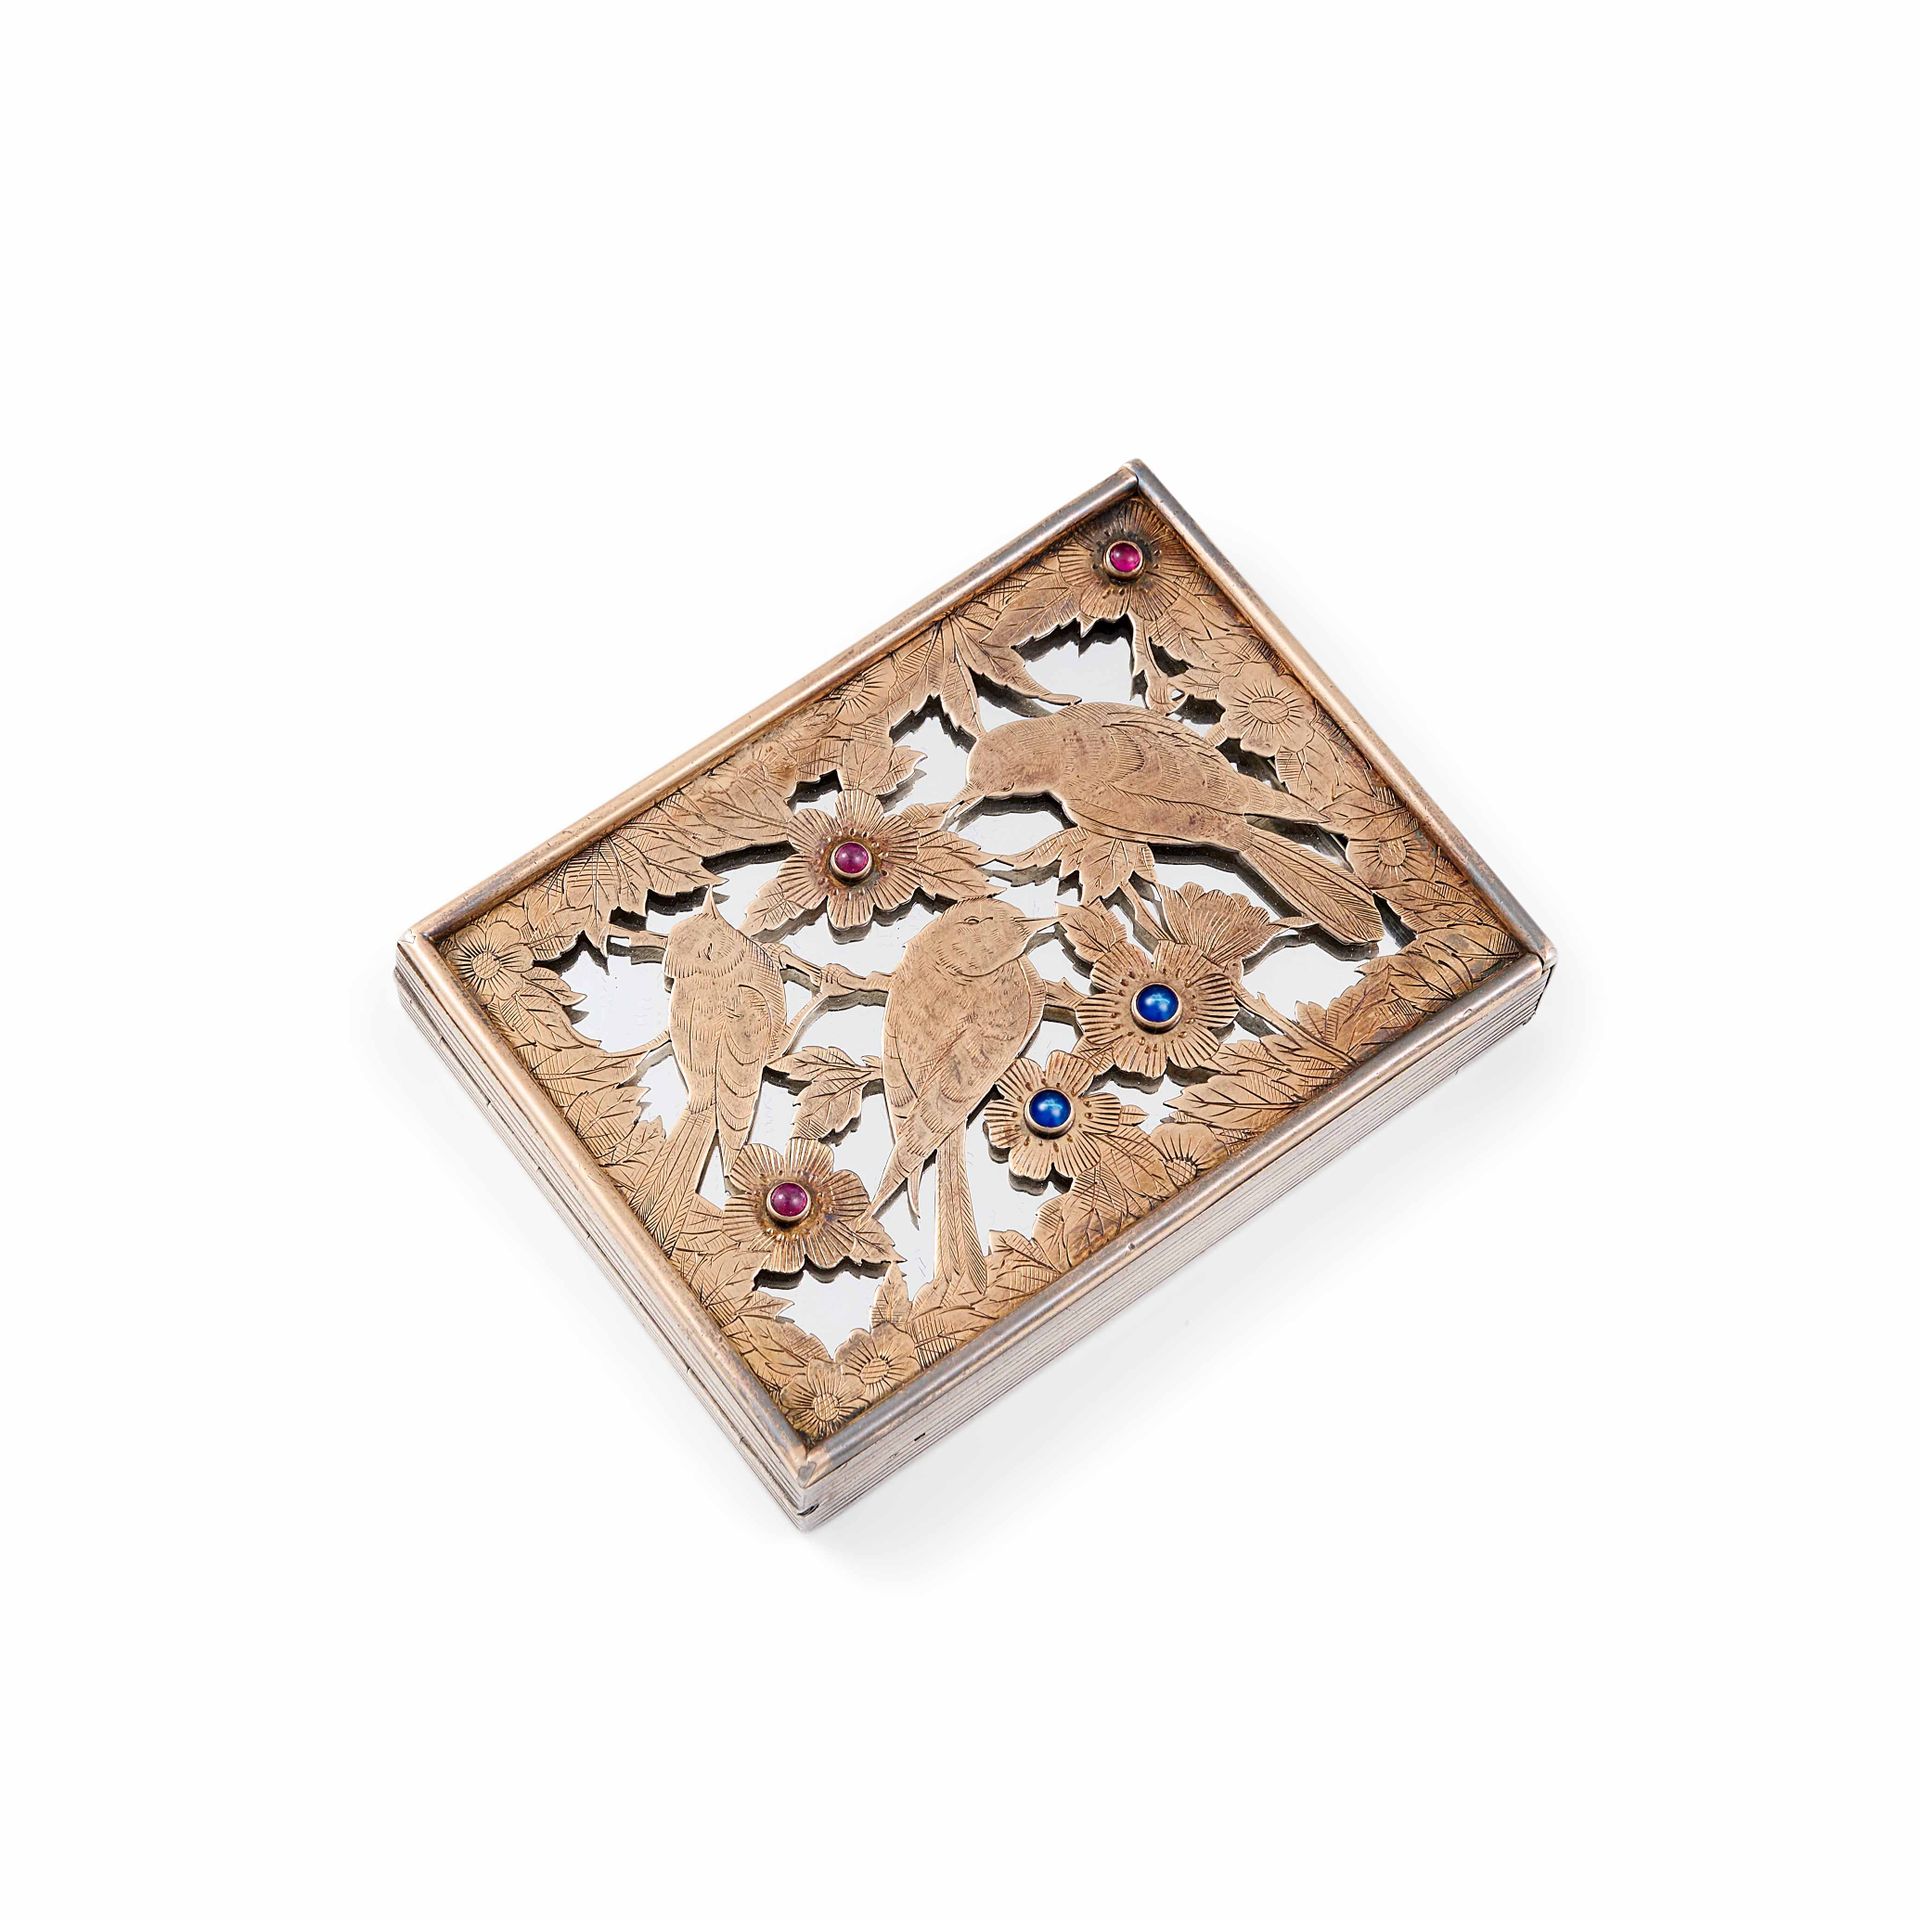 BOUCHERON MINAUDIERE 18K黄金和银，雕刻有花鸟图案，镶嵌有3颗凸圆形红宝石和2颗凸圆形蓝宝石。它由一个唇膏盒和一个带镜子的粉盒组成。
签名&hellip;